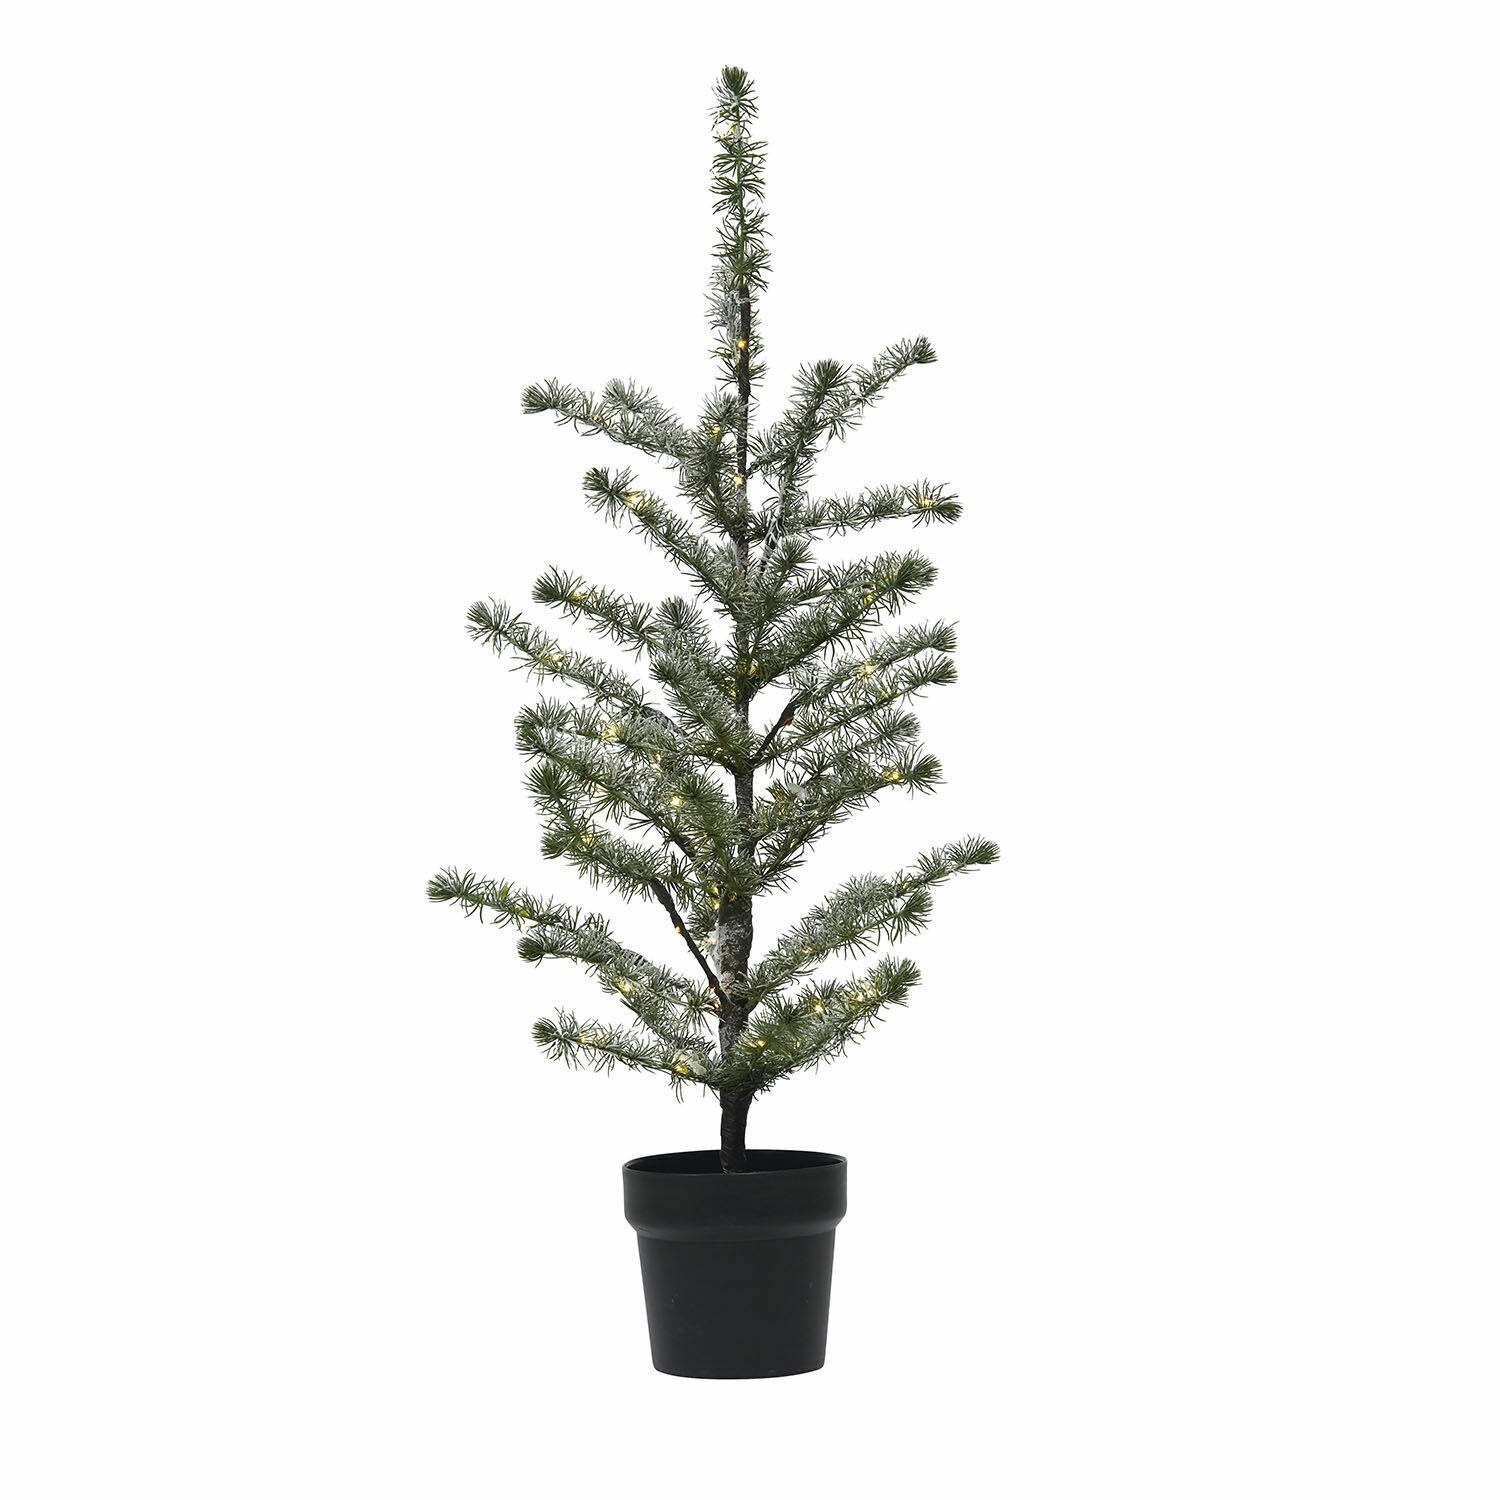 Lawrence grün Weihnachtsbaum Künstlicher Deko-Baum Mirabeau